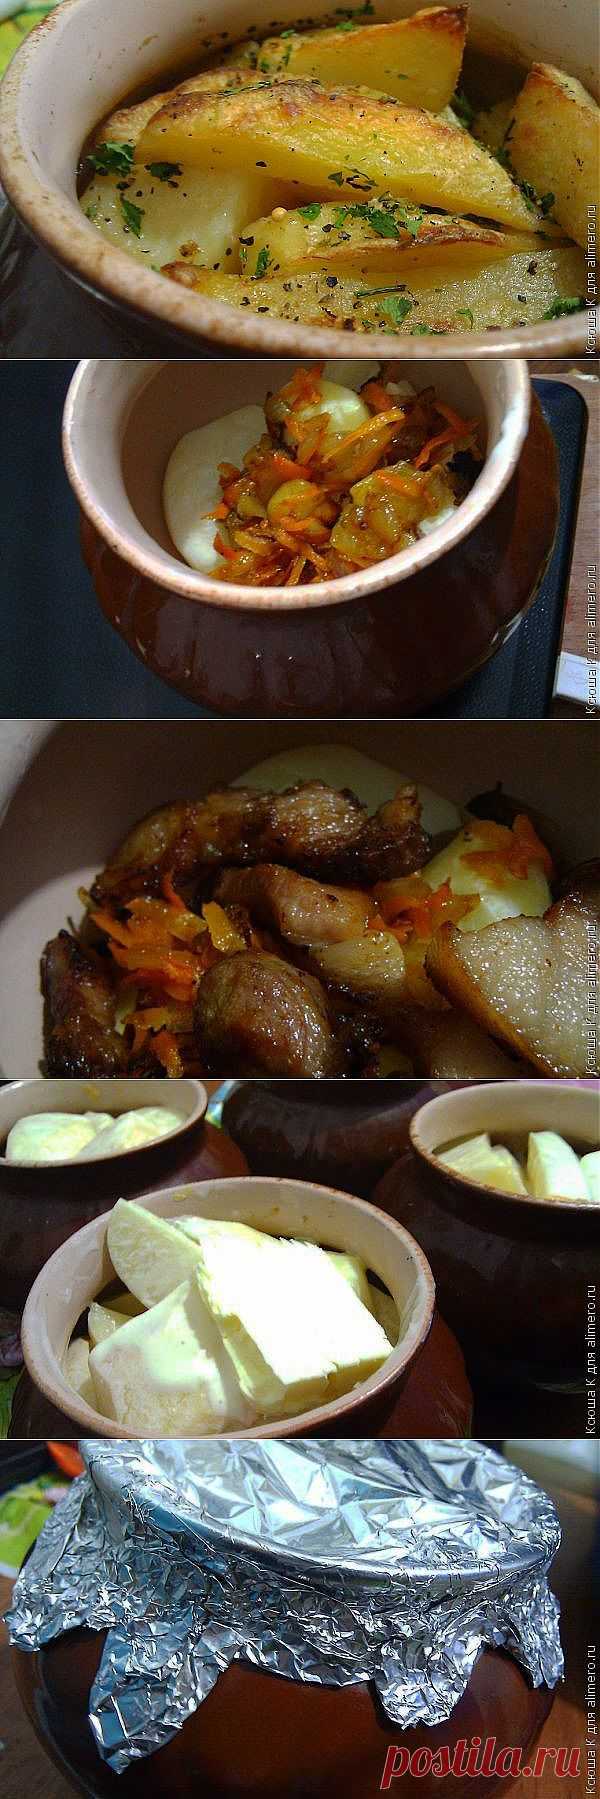 Картошка тушеная с мясом в горшочке / Рецепты с фото